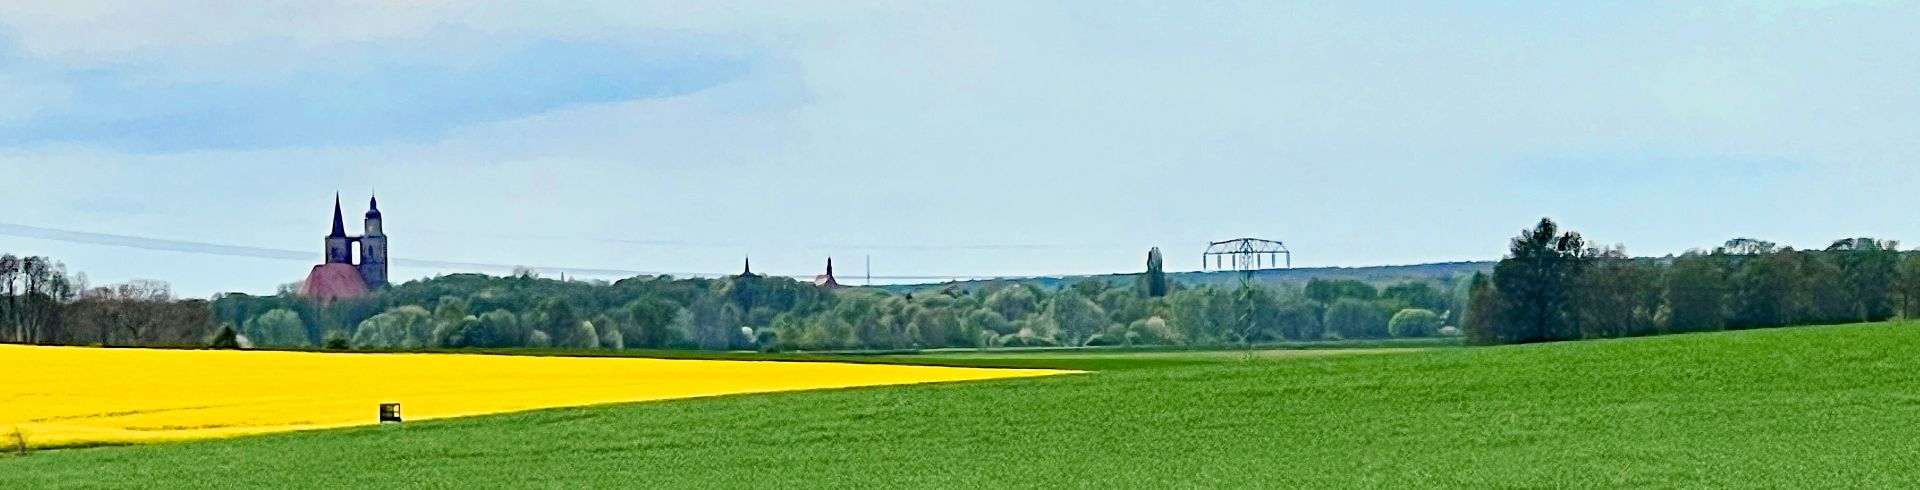 Silhouette Jüterbog, vom S12 Schlenzer-Fröhden aus gesehen, blühendes Rapsfeld, Getreidefeld